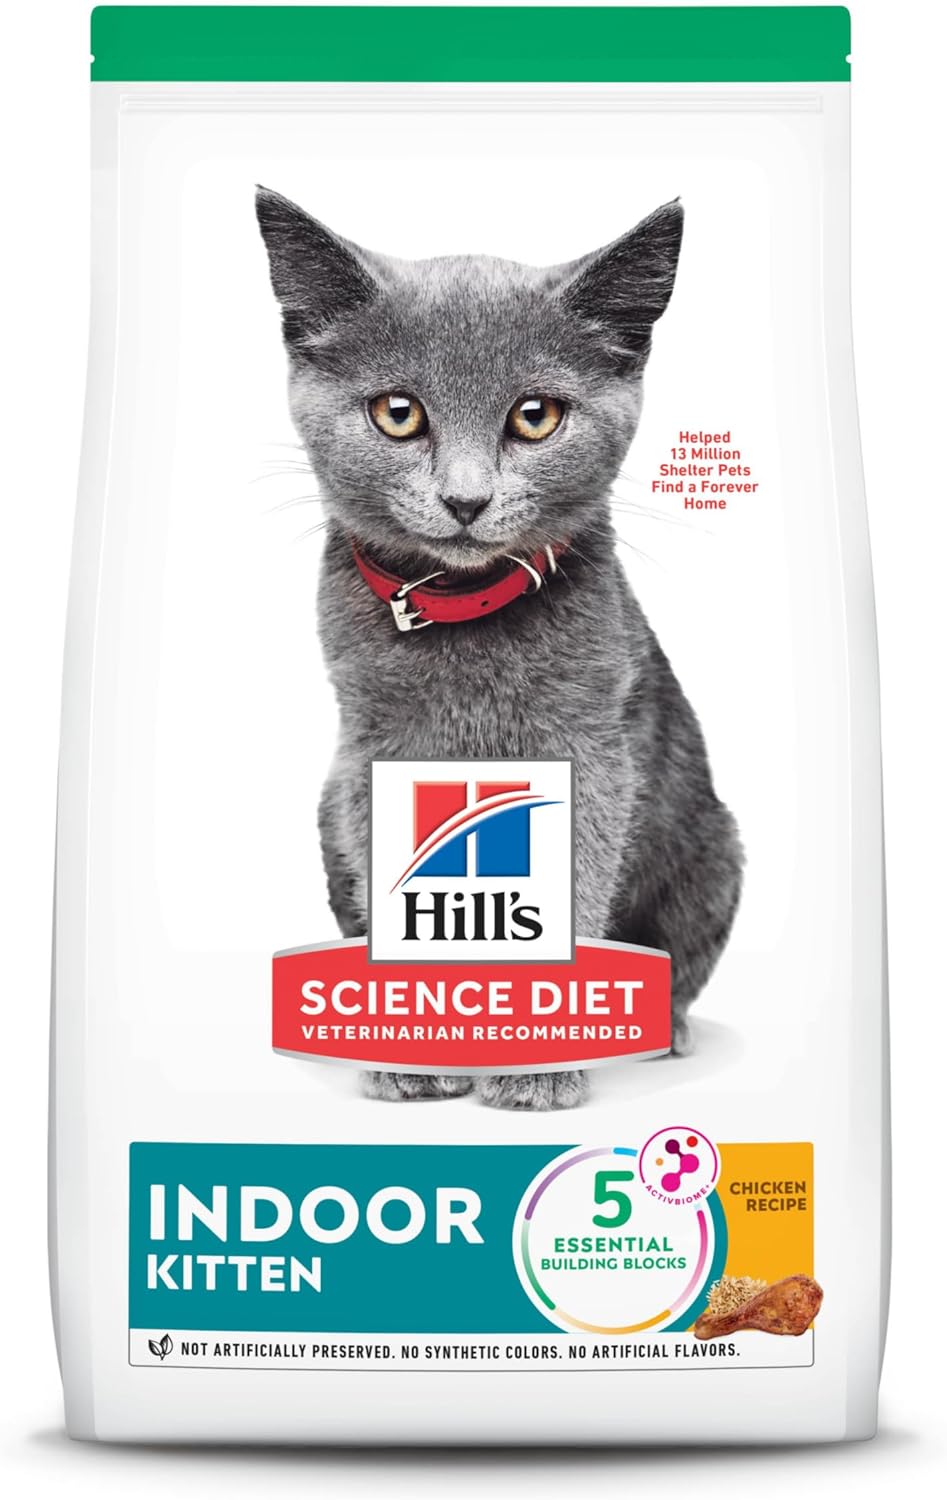 Hill’s Science Diet Indoor Kitten Dry Cat Food